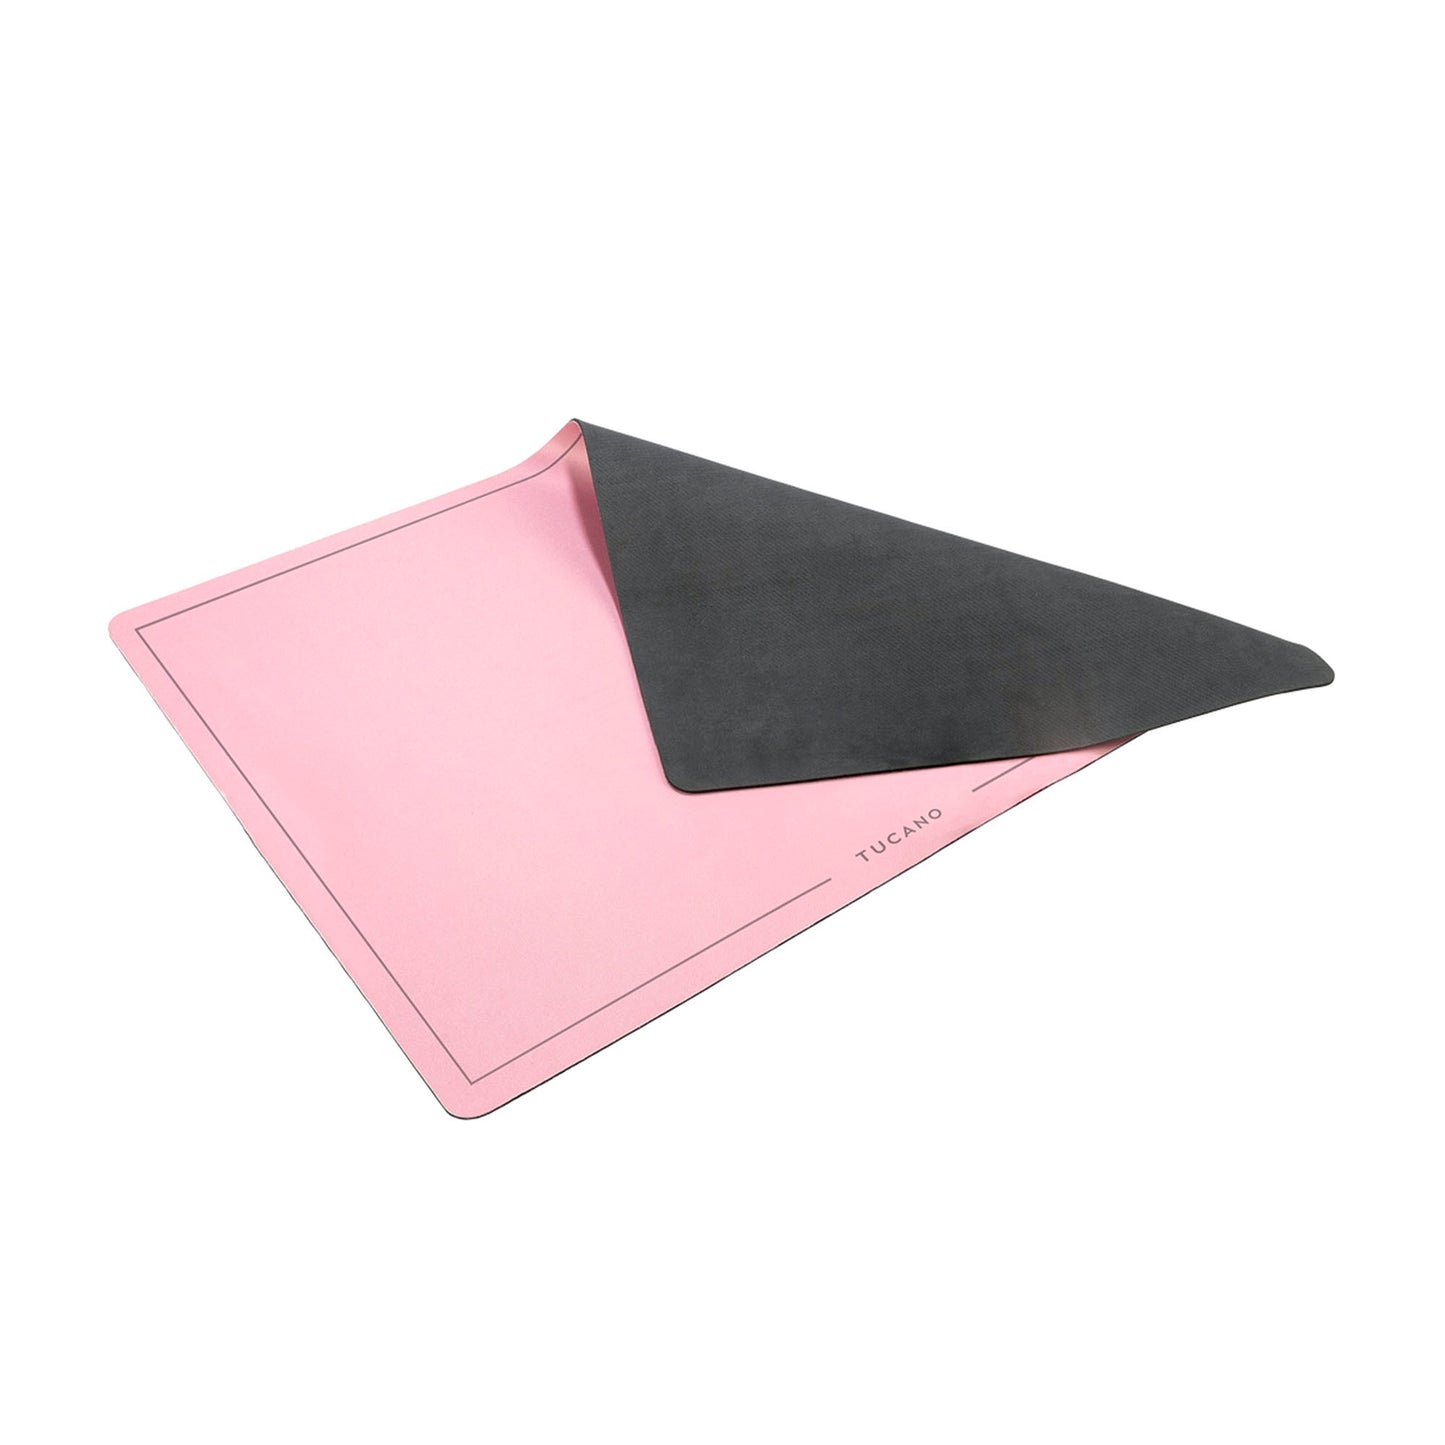 TUCANO Desk Pad - Pink